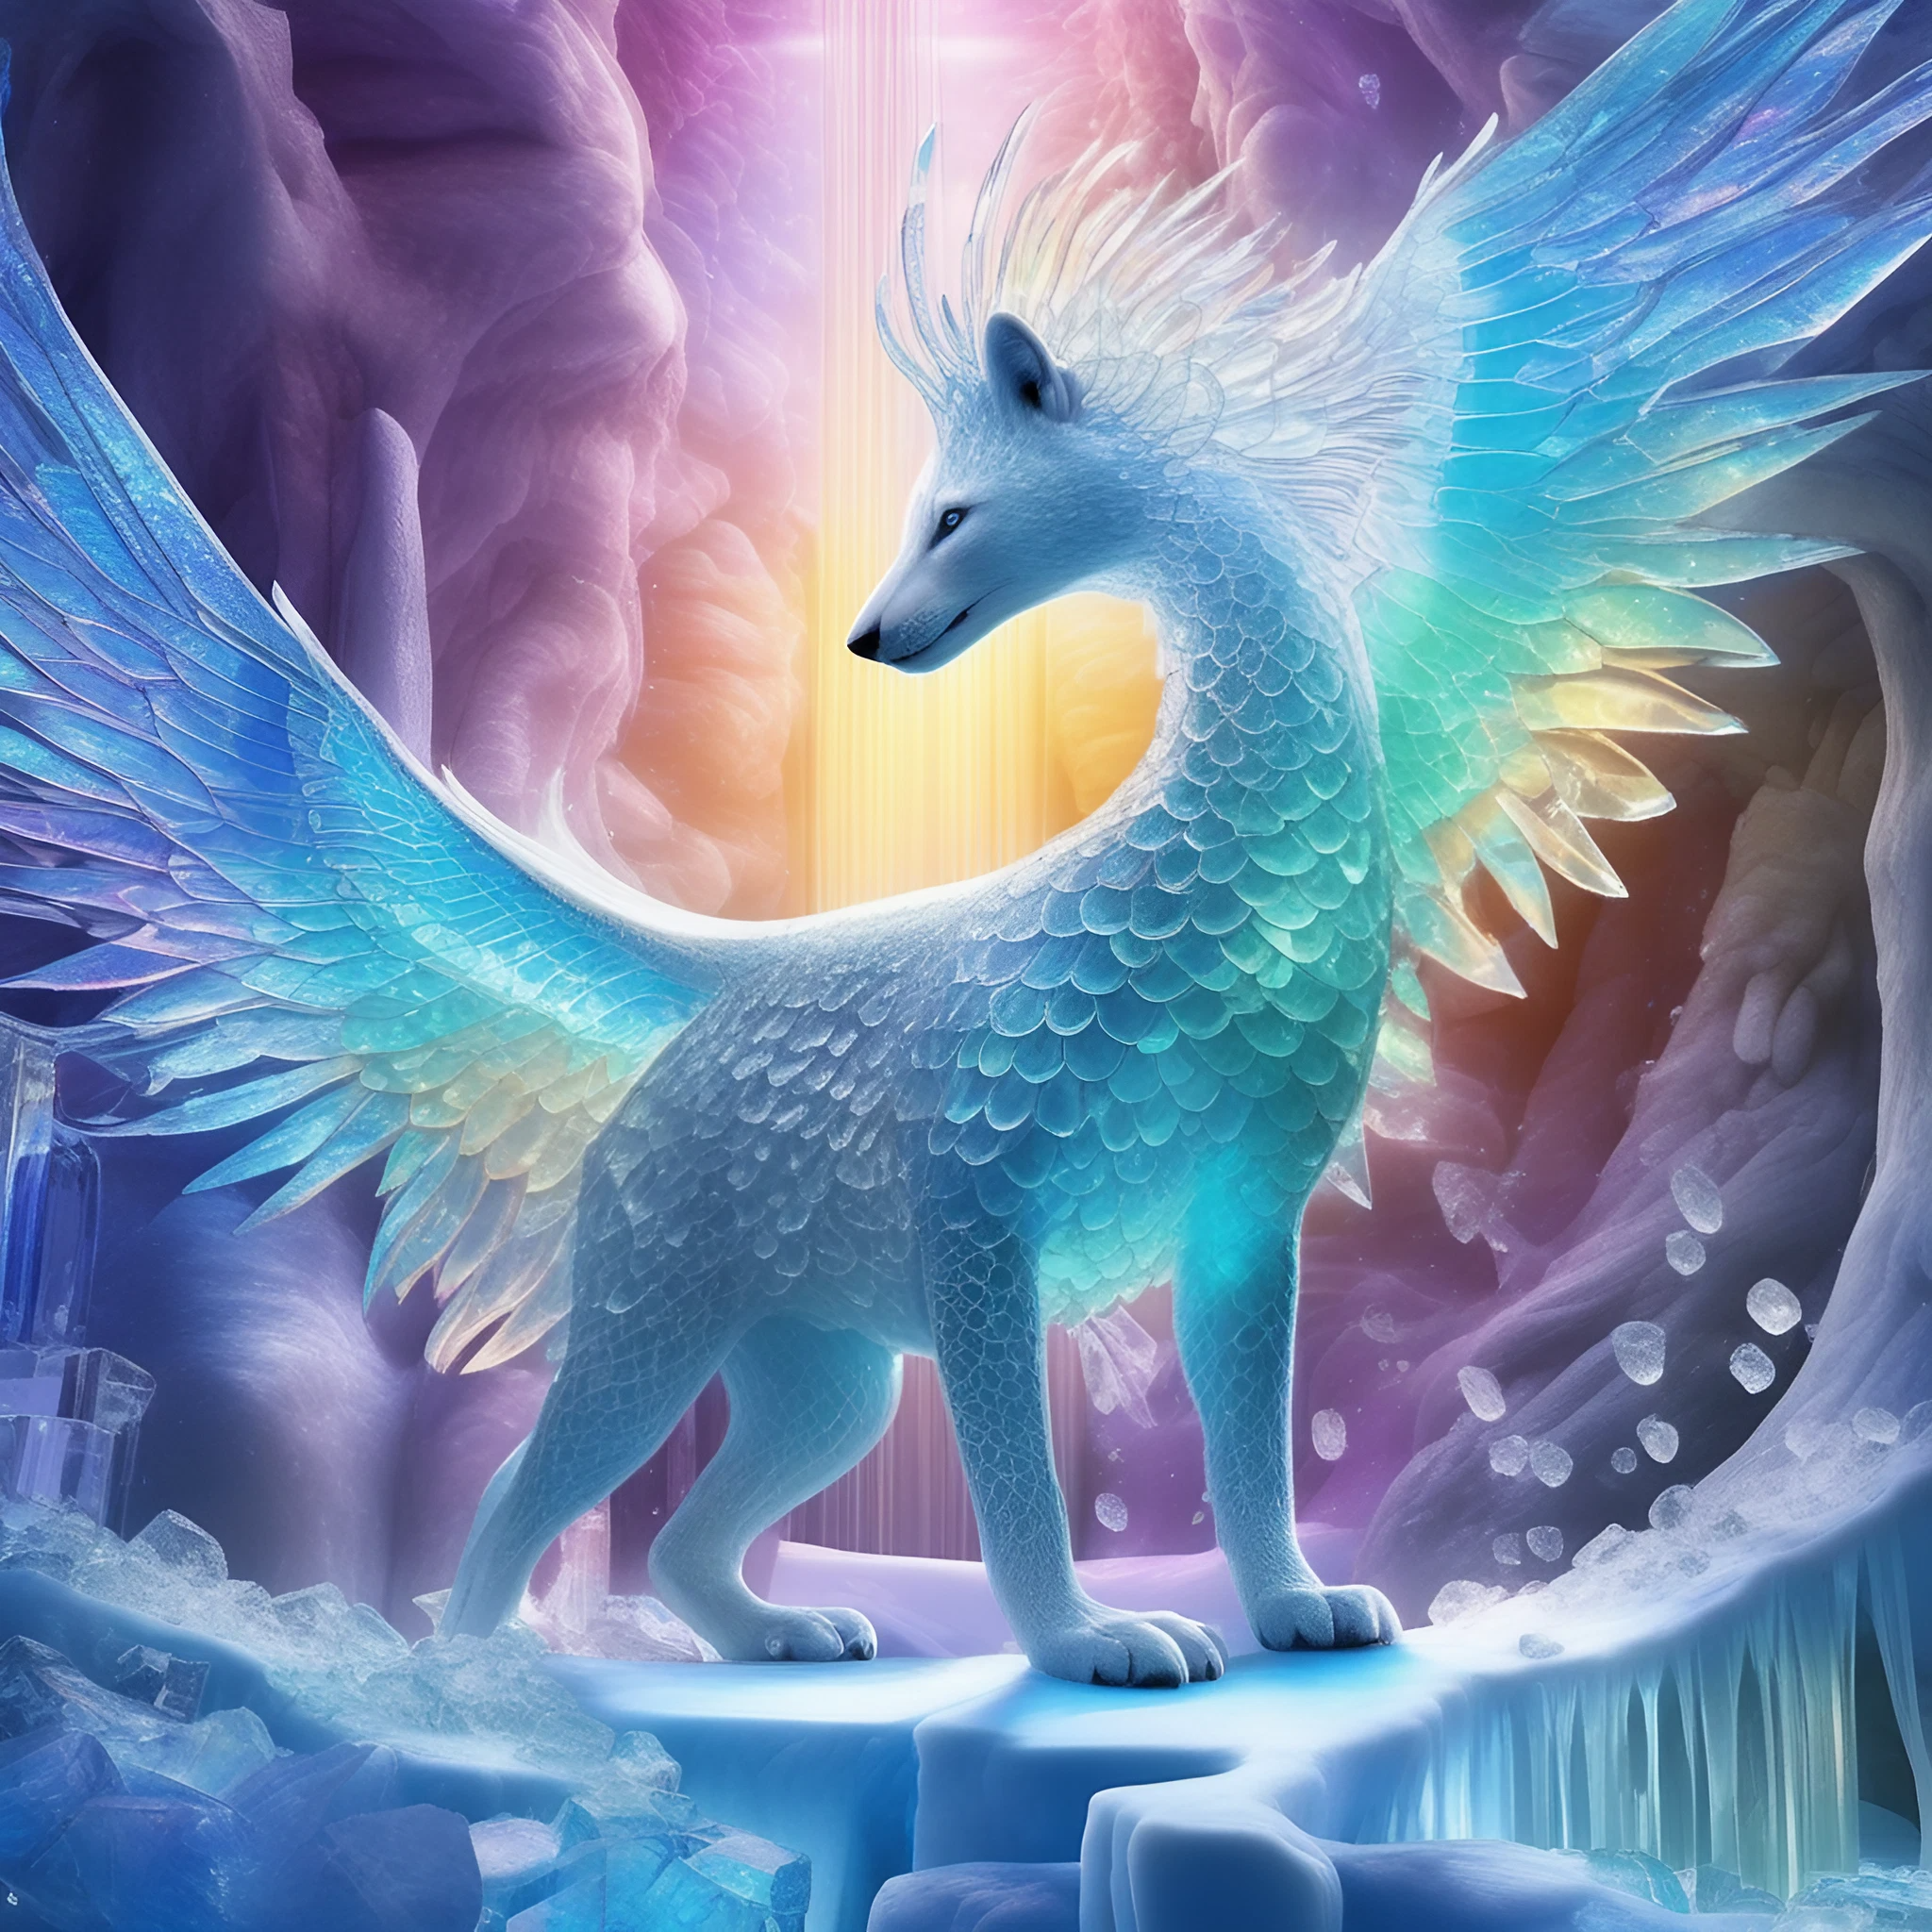 虹色の翼と白い狐の神秘的な聖獣＆オーロラと氷の世界の無料リアルイラスト3D画像素材